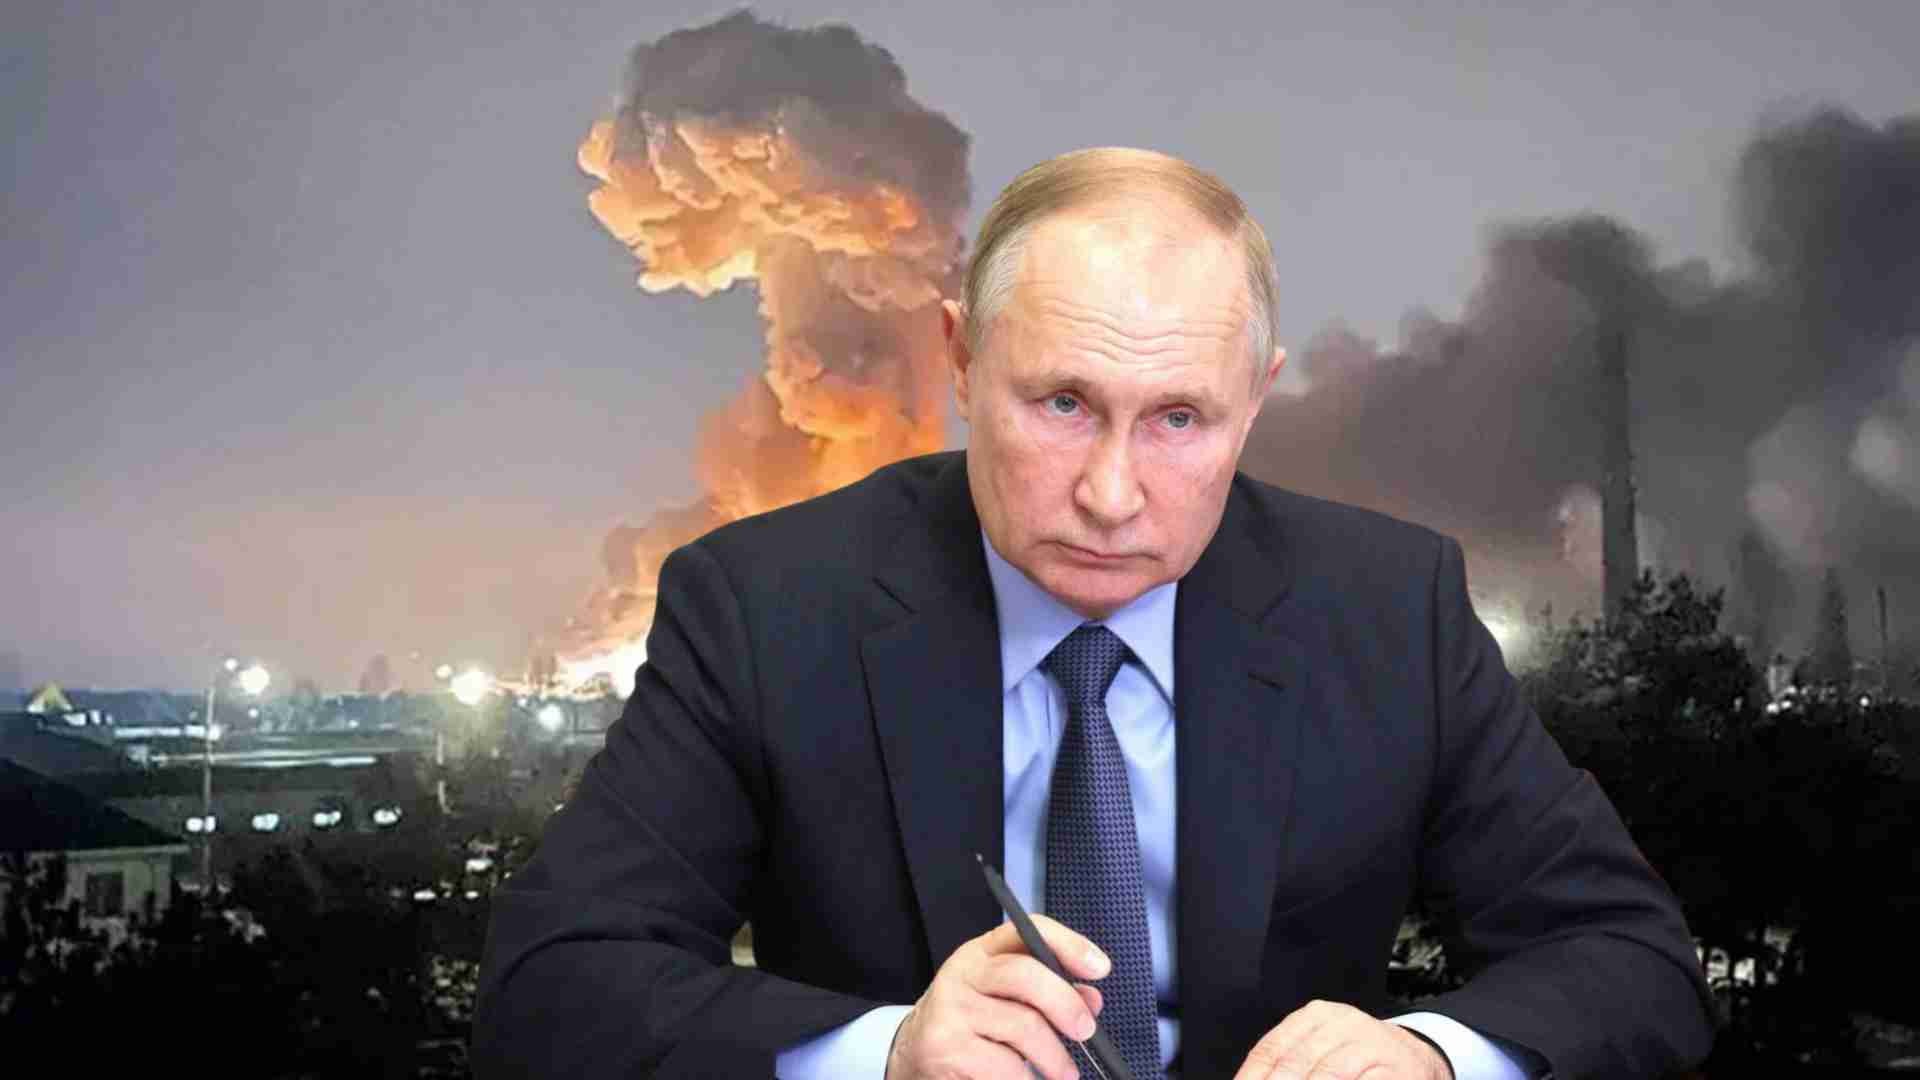 RUSKI STRUČNJAK UZBURKAO JAVNOST: “Putina boli k**** za ove poplave i ostale usr*** živote ljudi u Rusiji…”